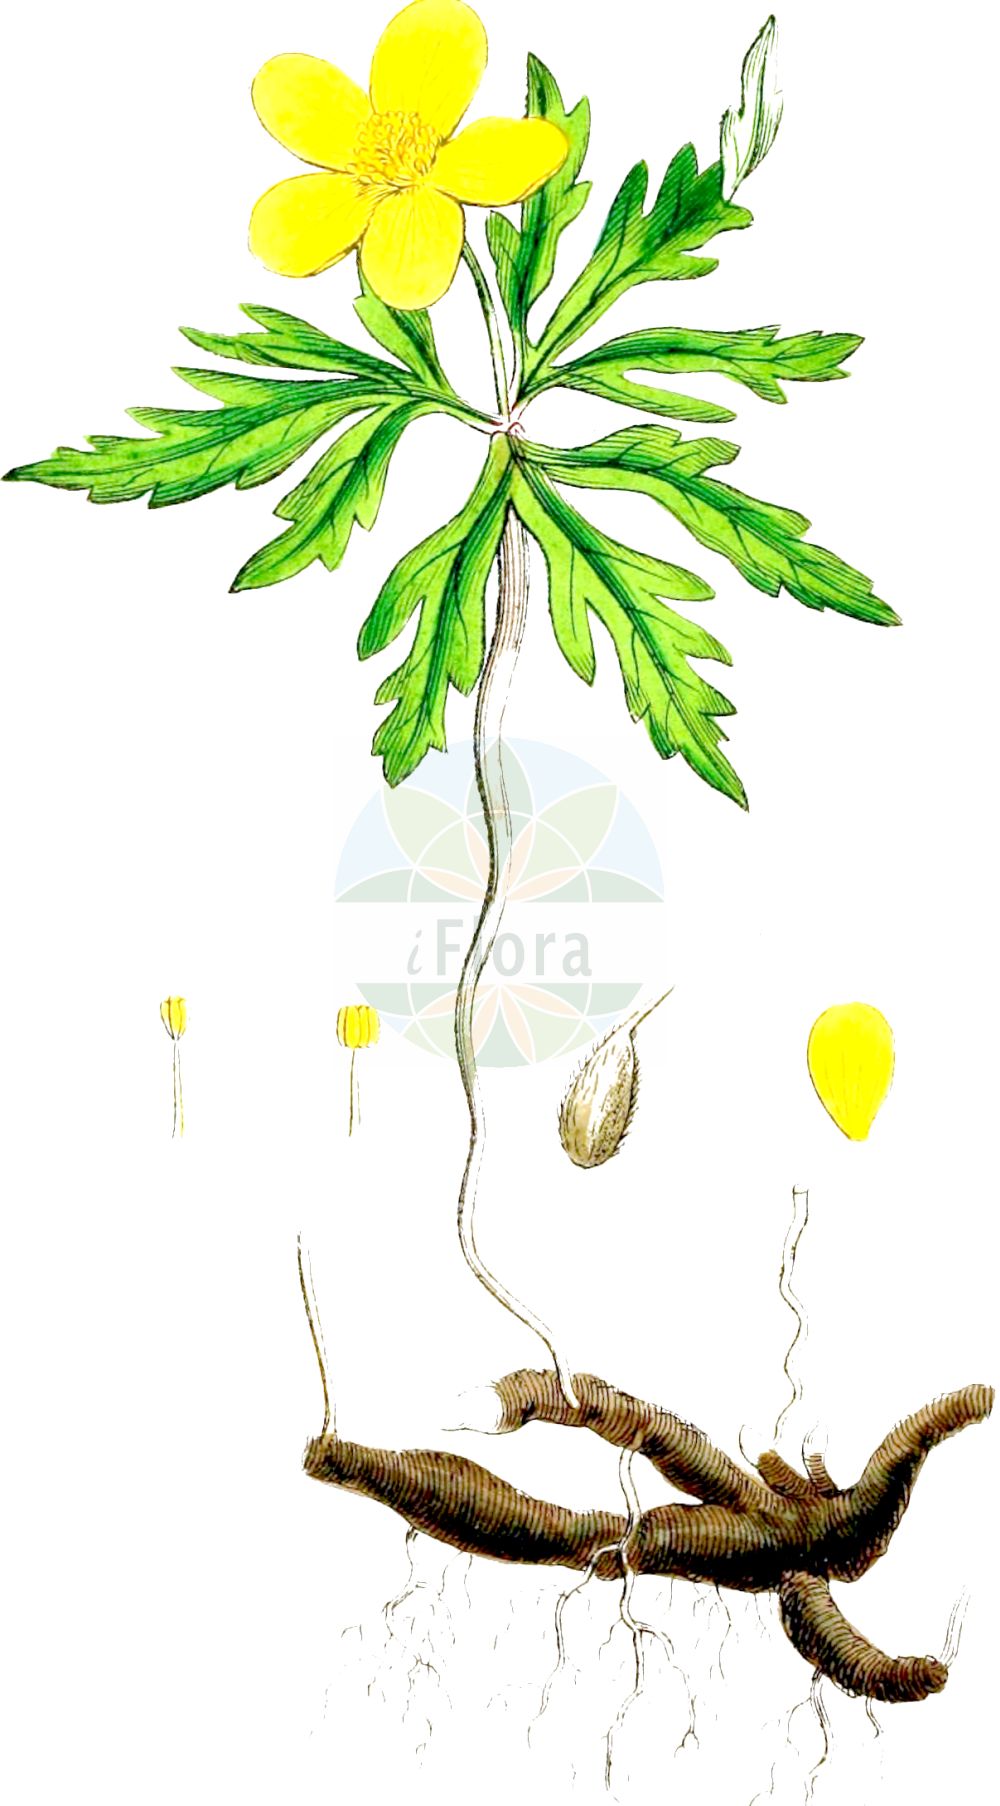 Historische Abbildung von Anemone ranunculoides (Gelbes Windröschen - Yellow Anemone). Das Bild zeigt Blatt, Bluete, Frucht und Same. ---- Historical Drawing of Anemone ranunculoides (Gelbes Windröschen - Yellow Anemone). The image is showing leaf, flower, fruit and seed.(Anemone ranunculoides,Gelbes Windröschen,Yellow Anemone,Anemone ranunculoides,Anemonoides ranunculoides,Gelbes Windroeschen,Goldhaehnchen,Yellow Anemone,Yellow Woodland Anemone,Yellow Wood Anemone,Anemone,Windröschen,Wind Flower,Ranunculaceae,Hahnenfußgewächse,Buttercup family,Blatt,Bluete,Frucht,Same,leaf,flower,fruit,seed,Sowerby (1790-1813))